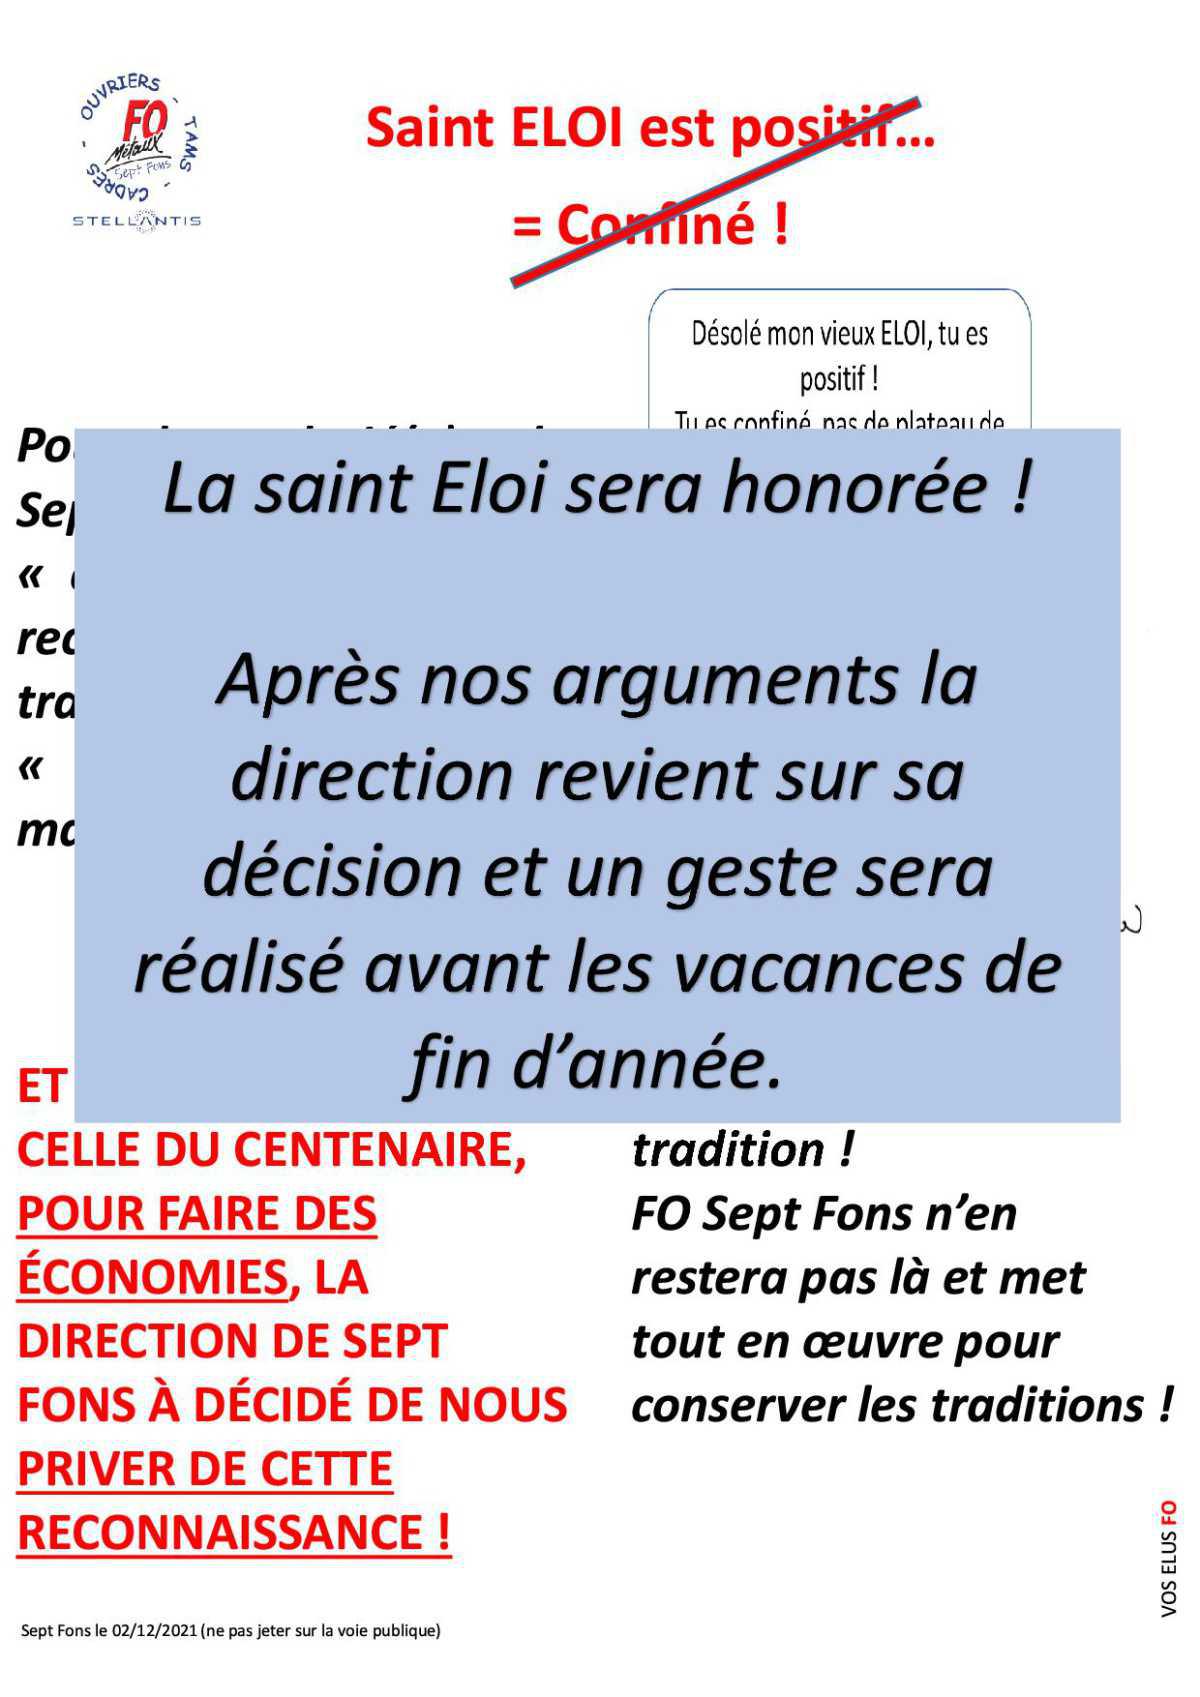 La Saint Eloi sera honorée à Sept-Fons...